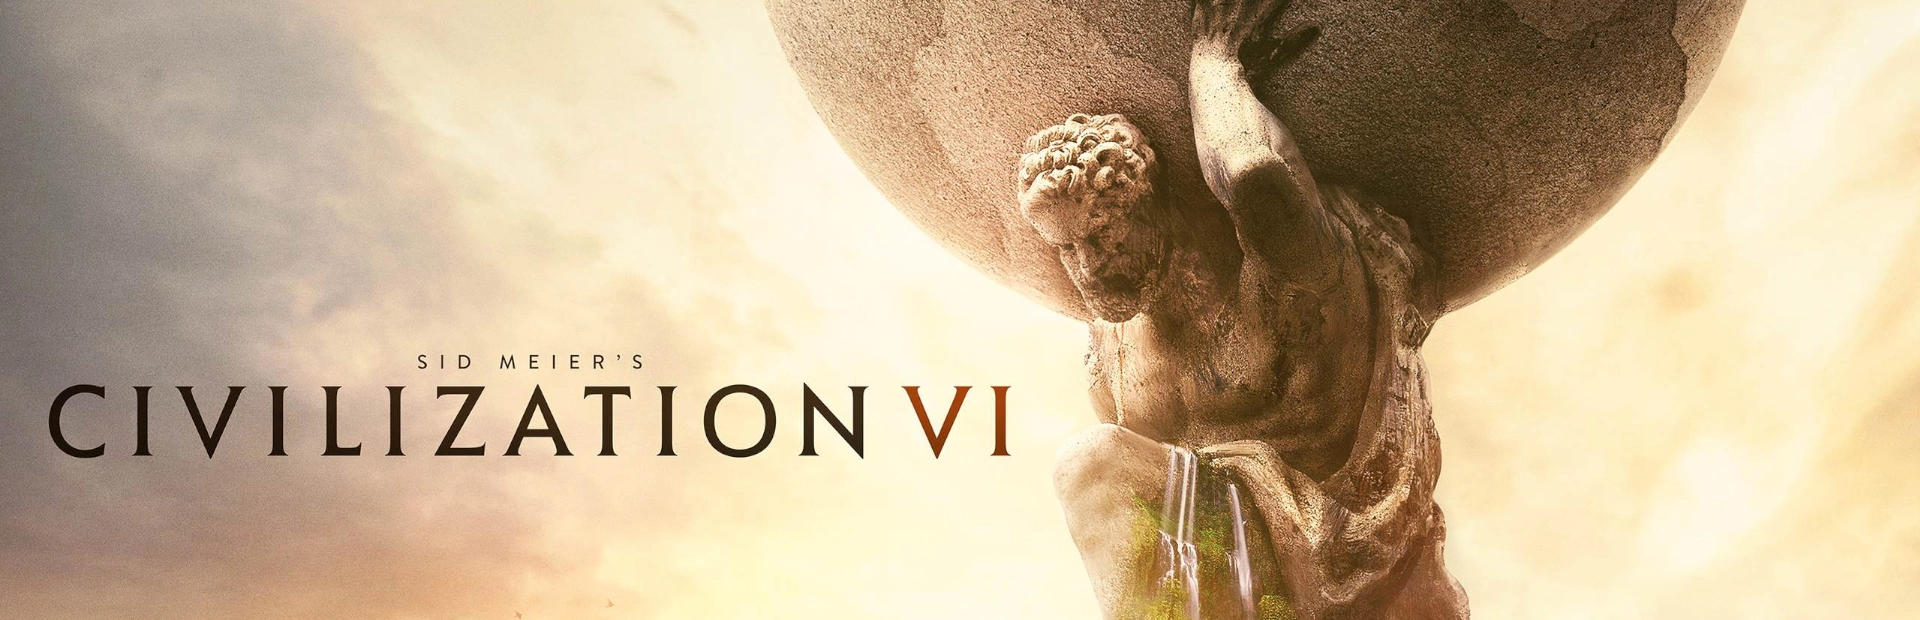 دانلود بازی Sid Meier's Civilization VI برای PC | گیمباتو